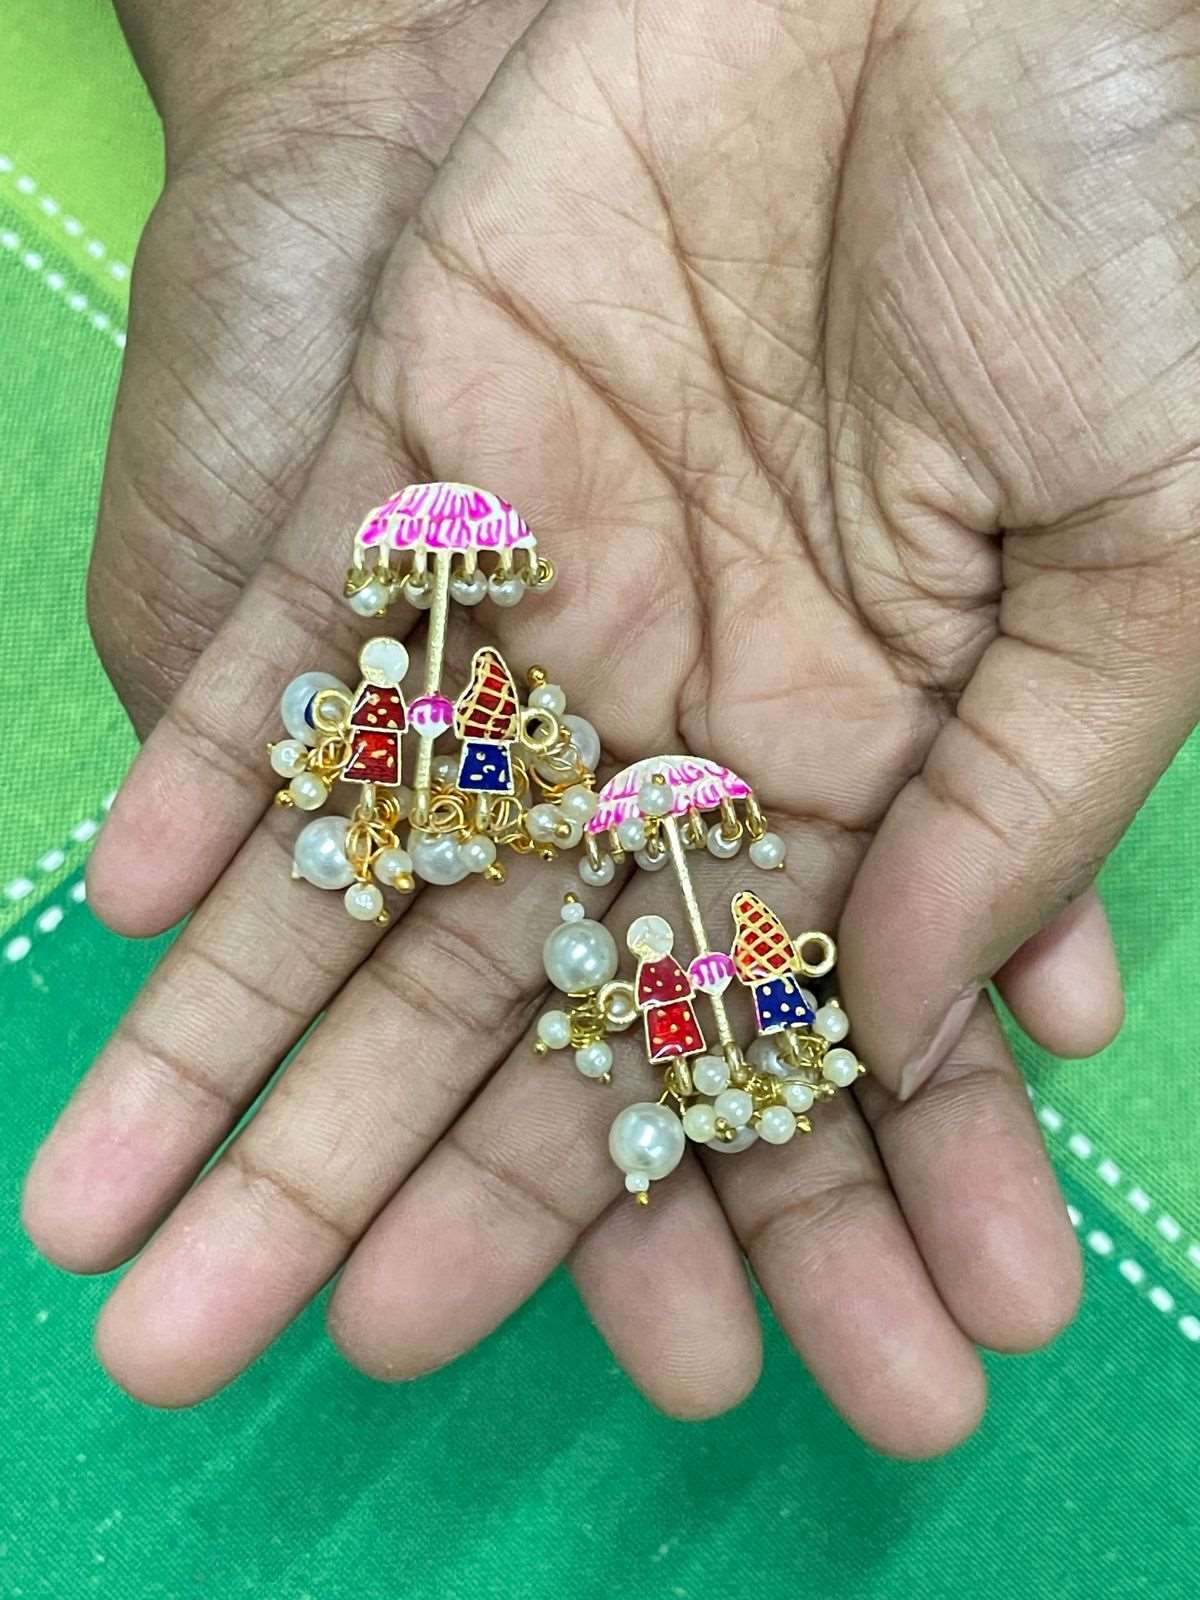 Amandeep Sidhu Inspired Double Gold Stone Mangalsutra & Doli Barat Necklace - Abdesignsjewellery